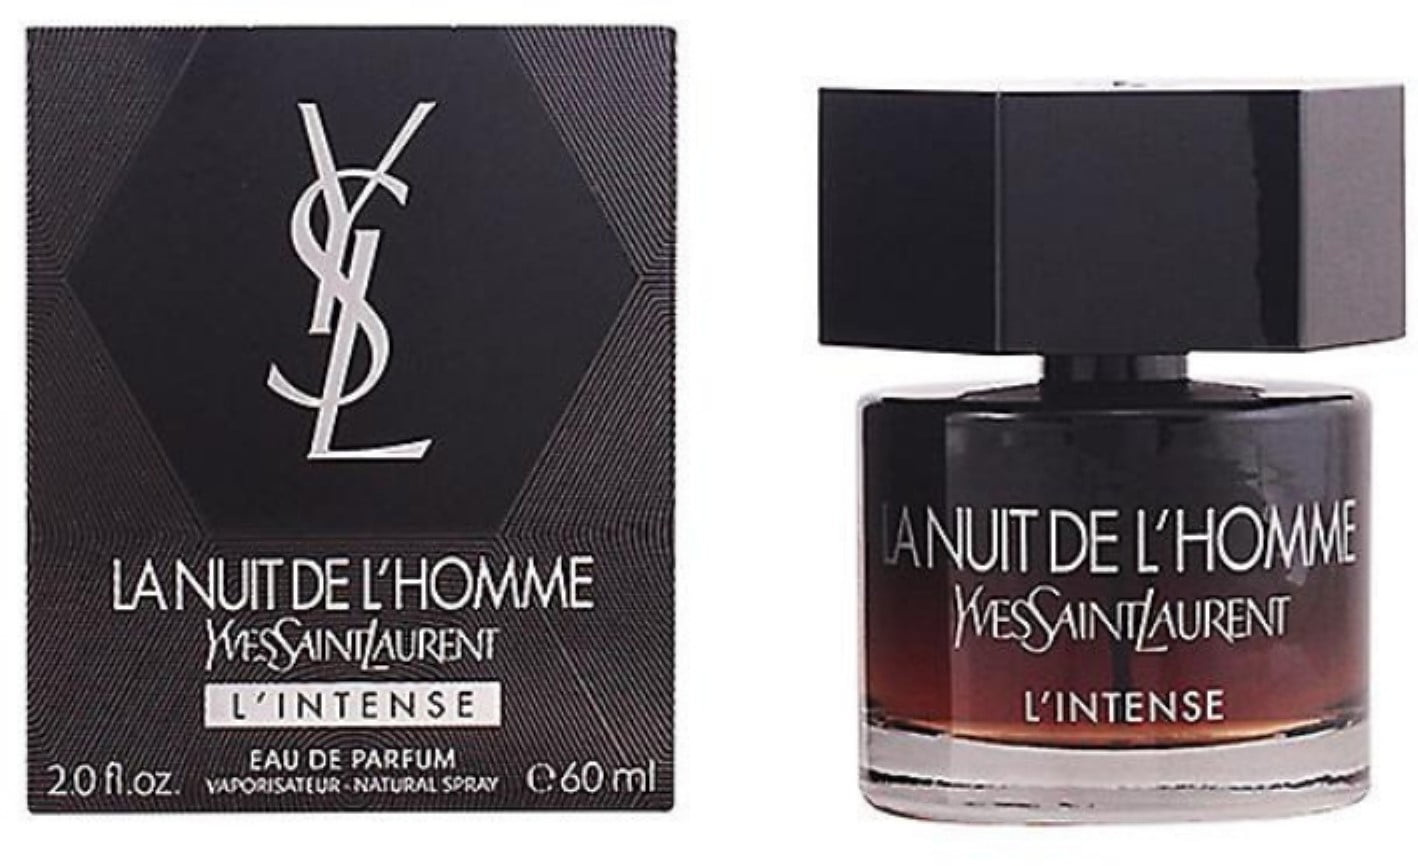 Yves Saint Laurent, La Nuit De L'Homme L'Intense Eau De Parfum Spray 2.0 oz